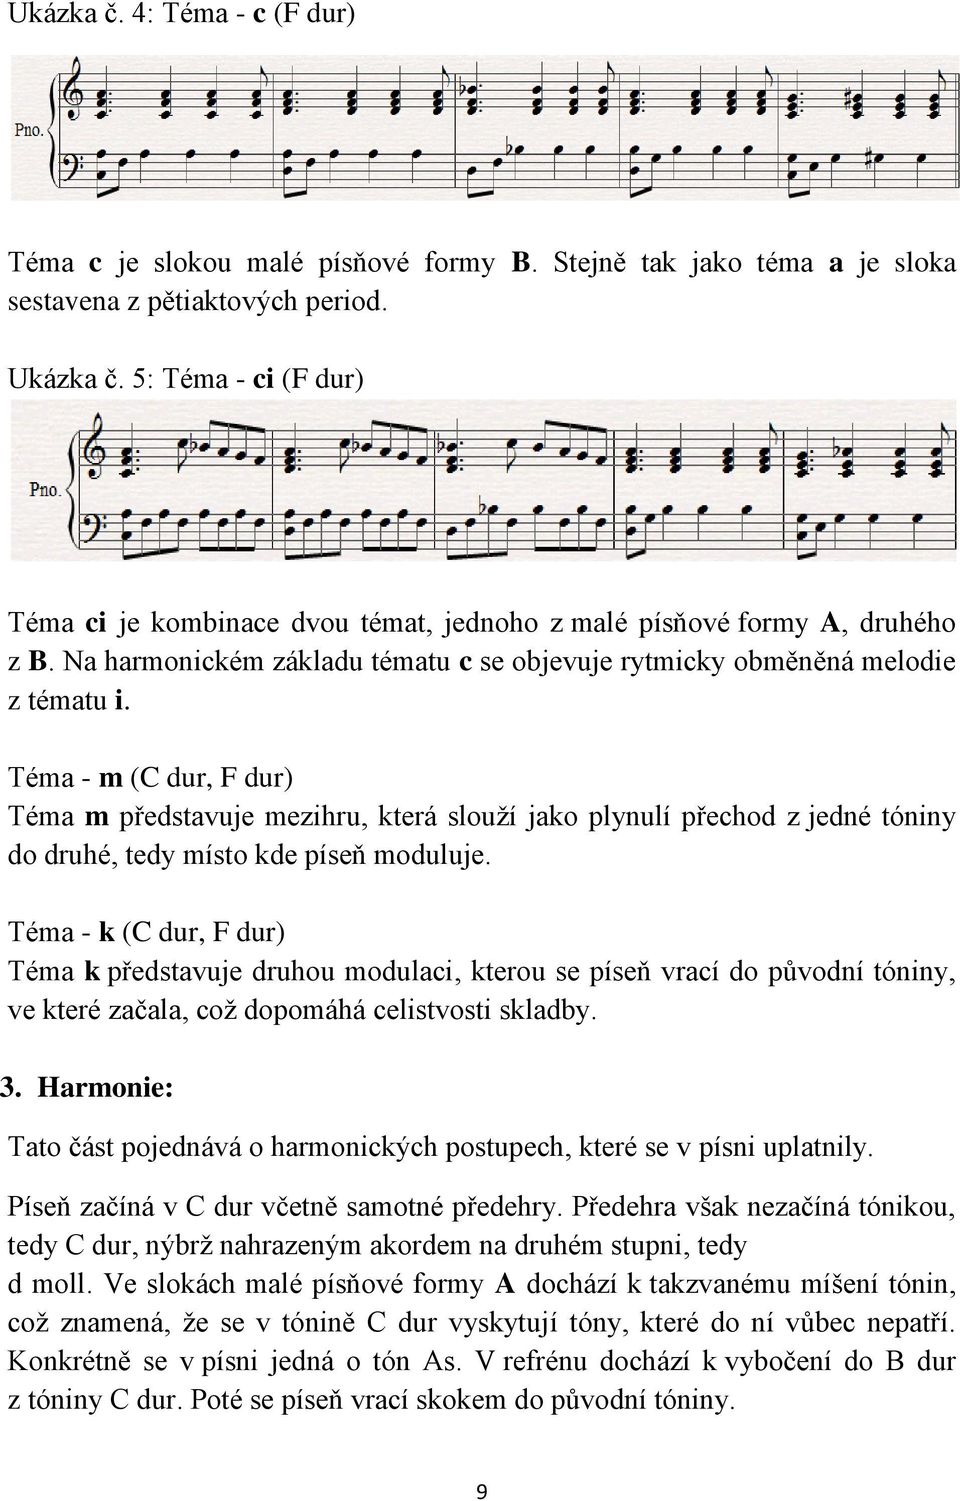 Téma - m (C dur, F dur) Téma m představuje mezihru, která slouží jako plynulí přechod z jedné tóniny do druhé, tedy místo kde píseň moduluje.